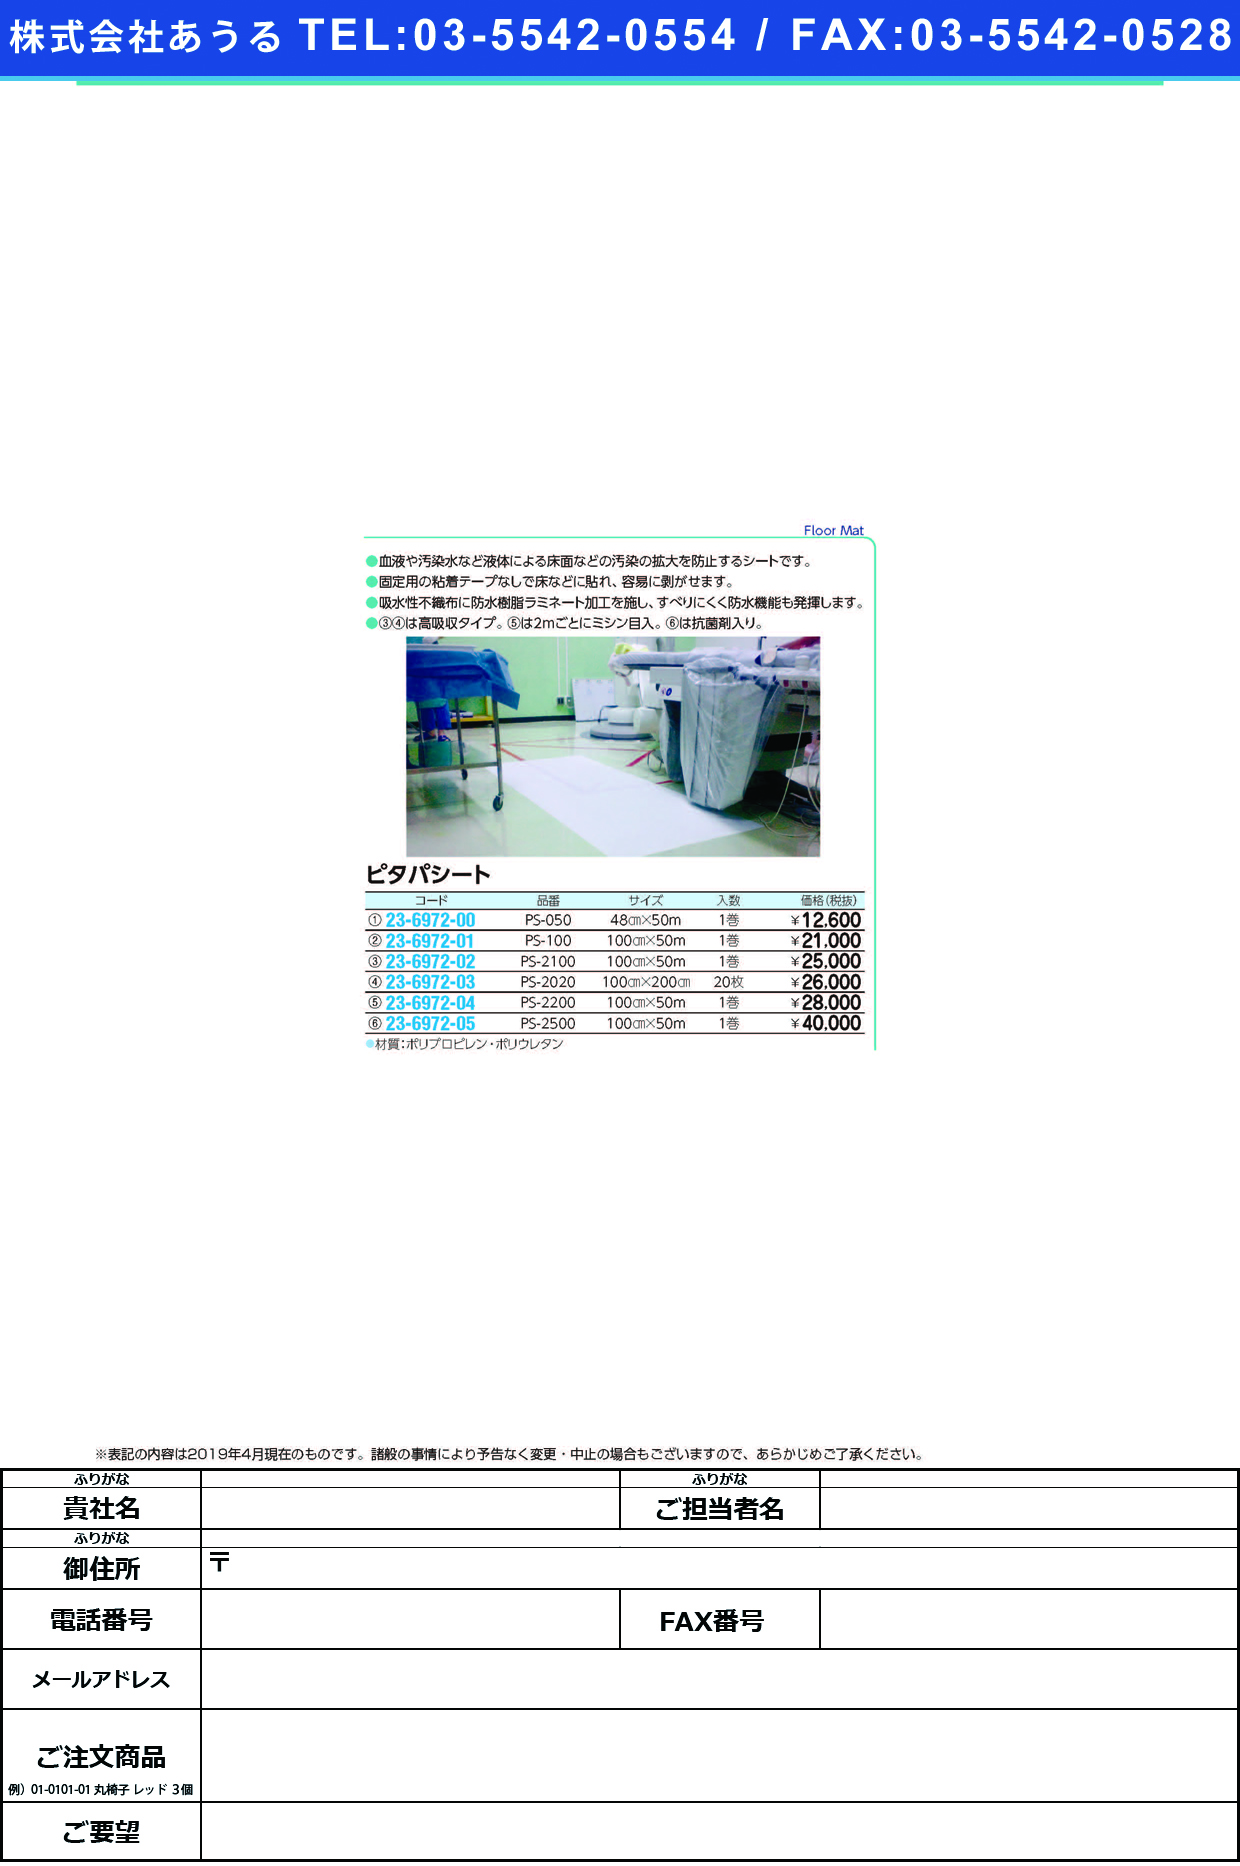 (23-6972-01)ピタパシート PS-100(100CMX50M) ﾋﾟﾀﾊﾟｼｰﾄ(バイリーンクリエイト)【1巻単位】【2019年カタログ商品】